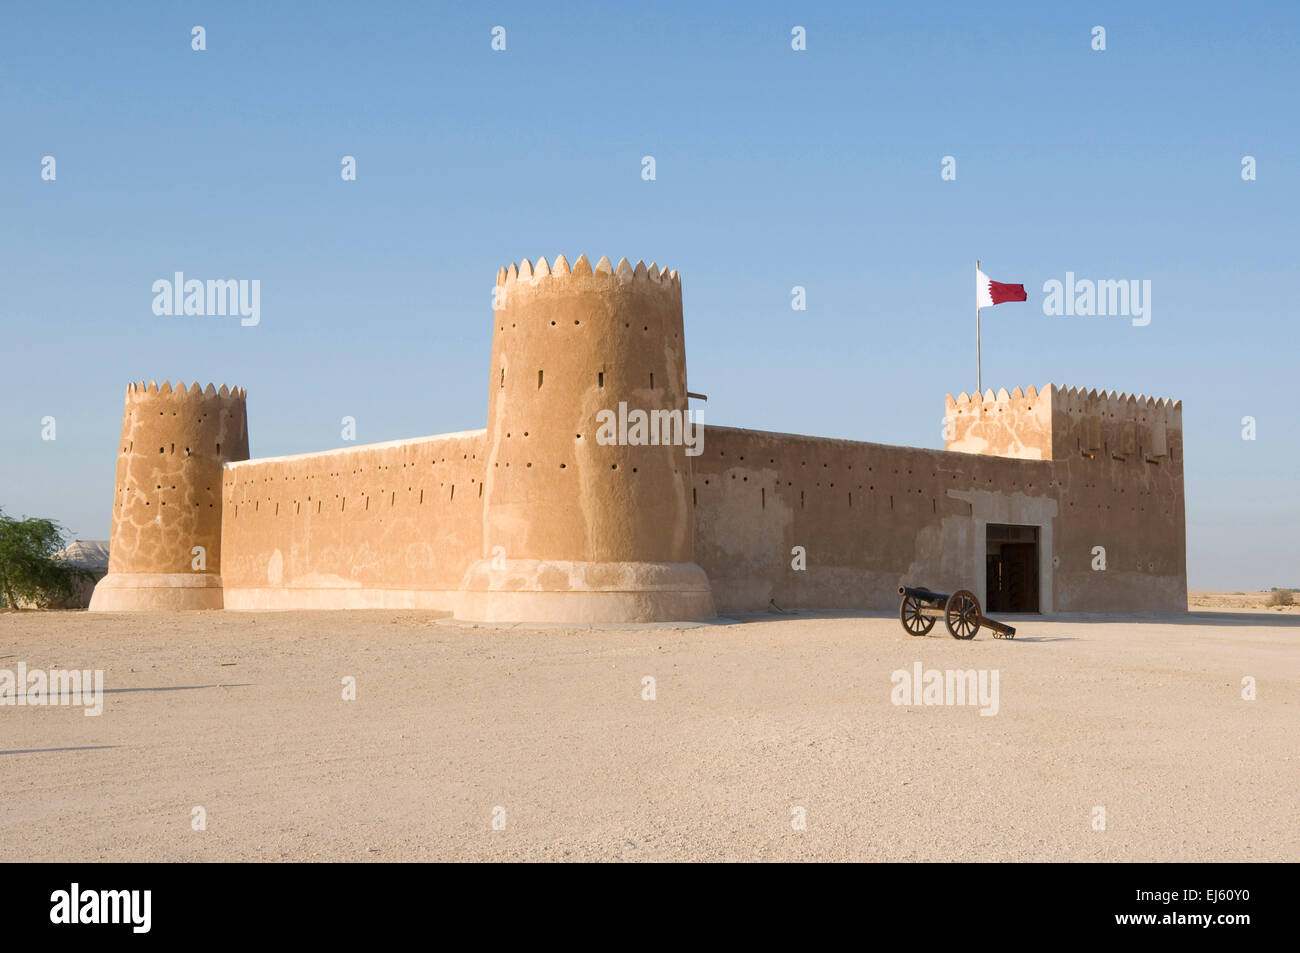 Al Zubarah Forteresse, Site du patrimoine mondial de l'UNESCO, au Qatar, au Moyen-Orient Banque D'Images